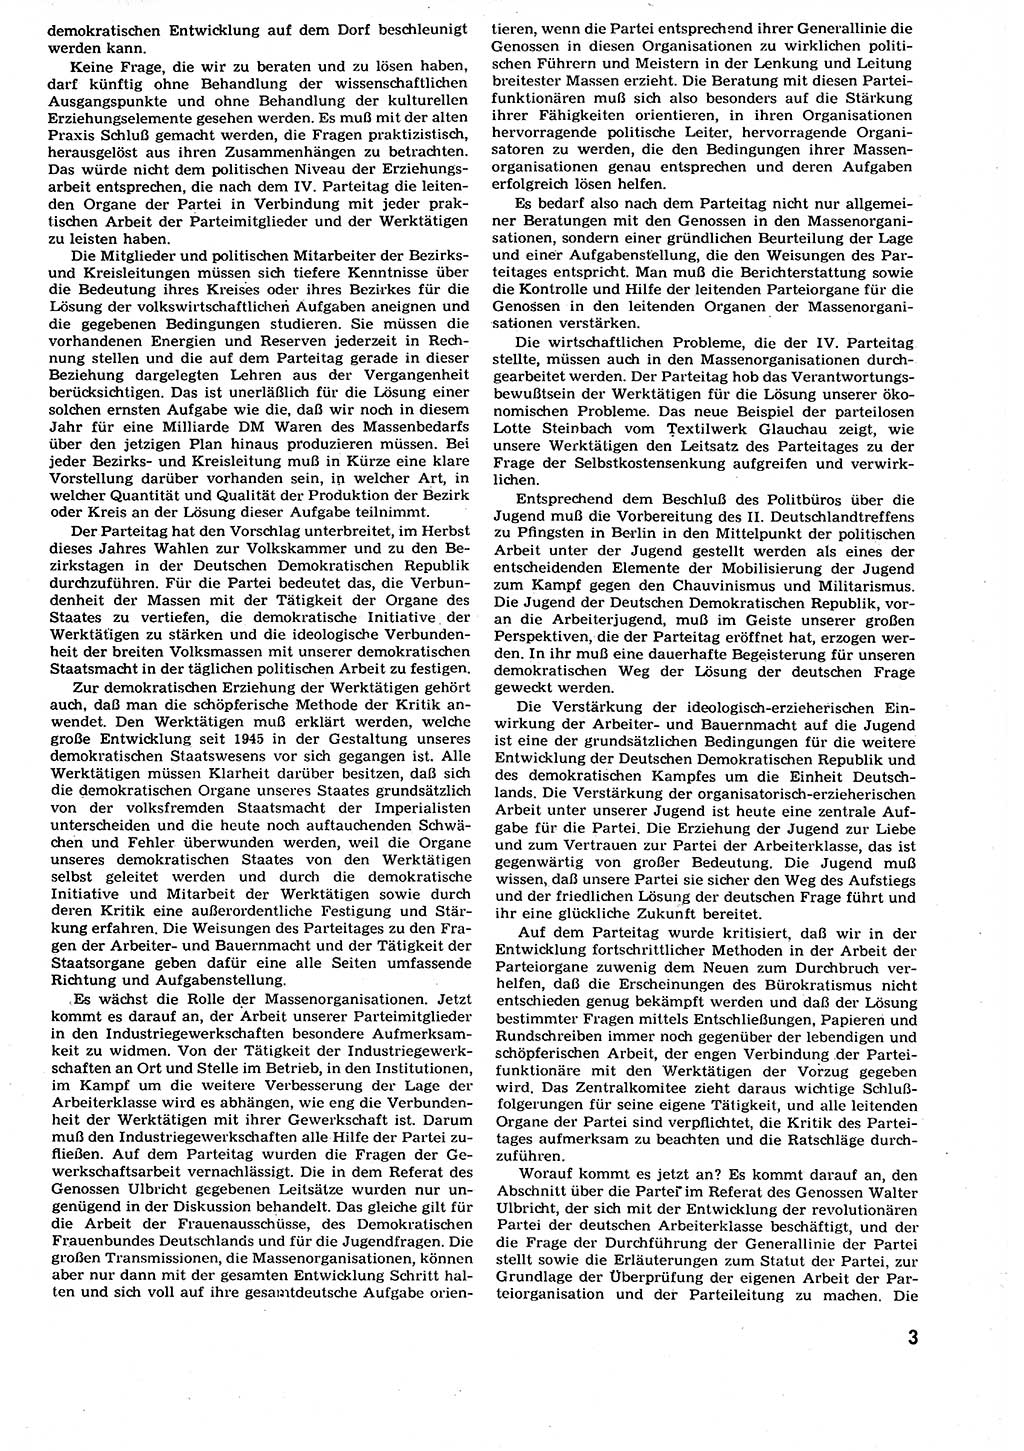 Neuer Weg (NW), Organ des Zentralkomitees (ZK) der SED (Sozialistische Einheitspartei Deutschlands) für alle Parteiarbeiter, 9. Jahrgang [Deutsche Demokratische Republik (DDR)] 1954, Heft 8/3 (NW ZK SED DDR 1954, H. 8/3)